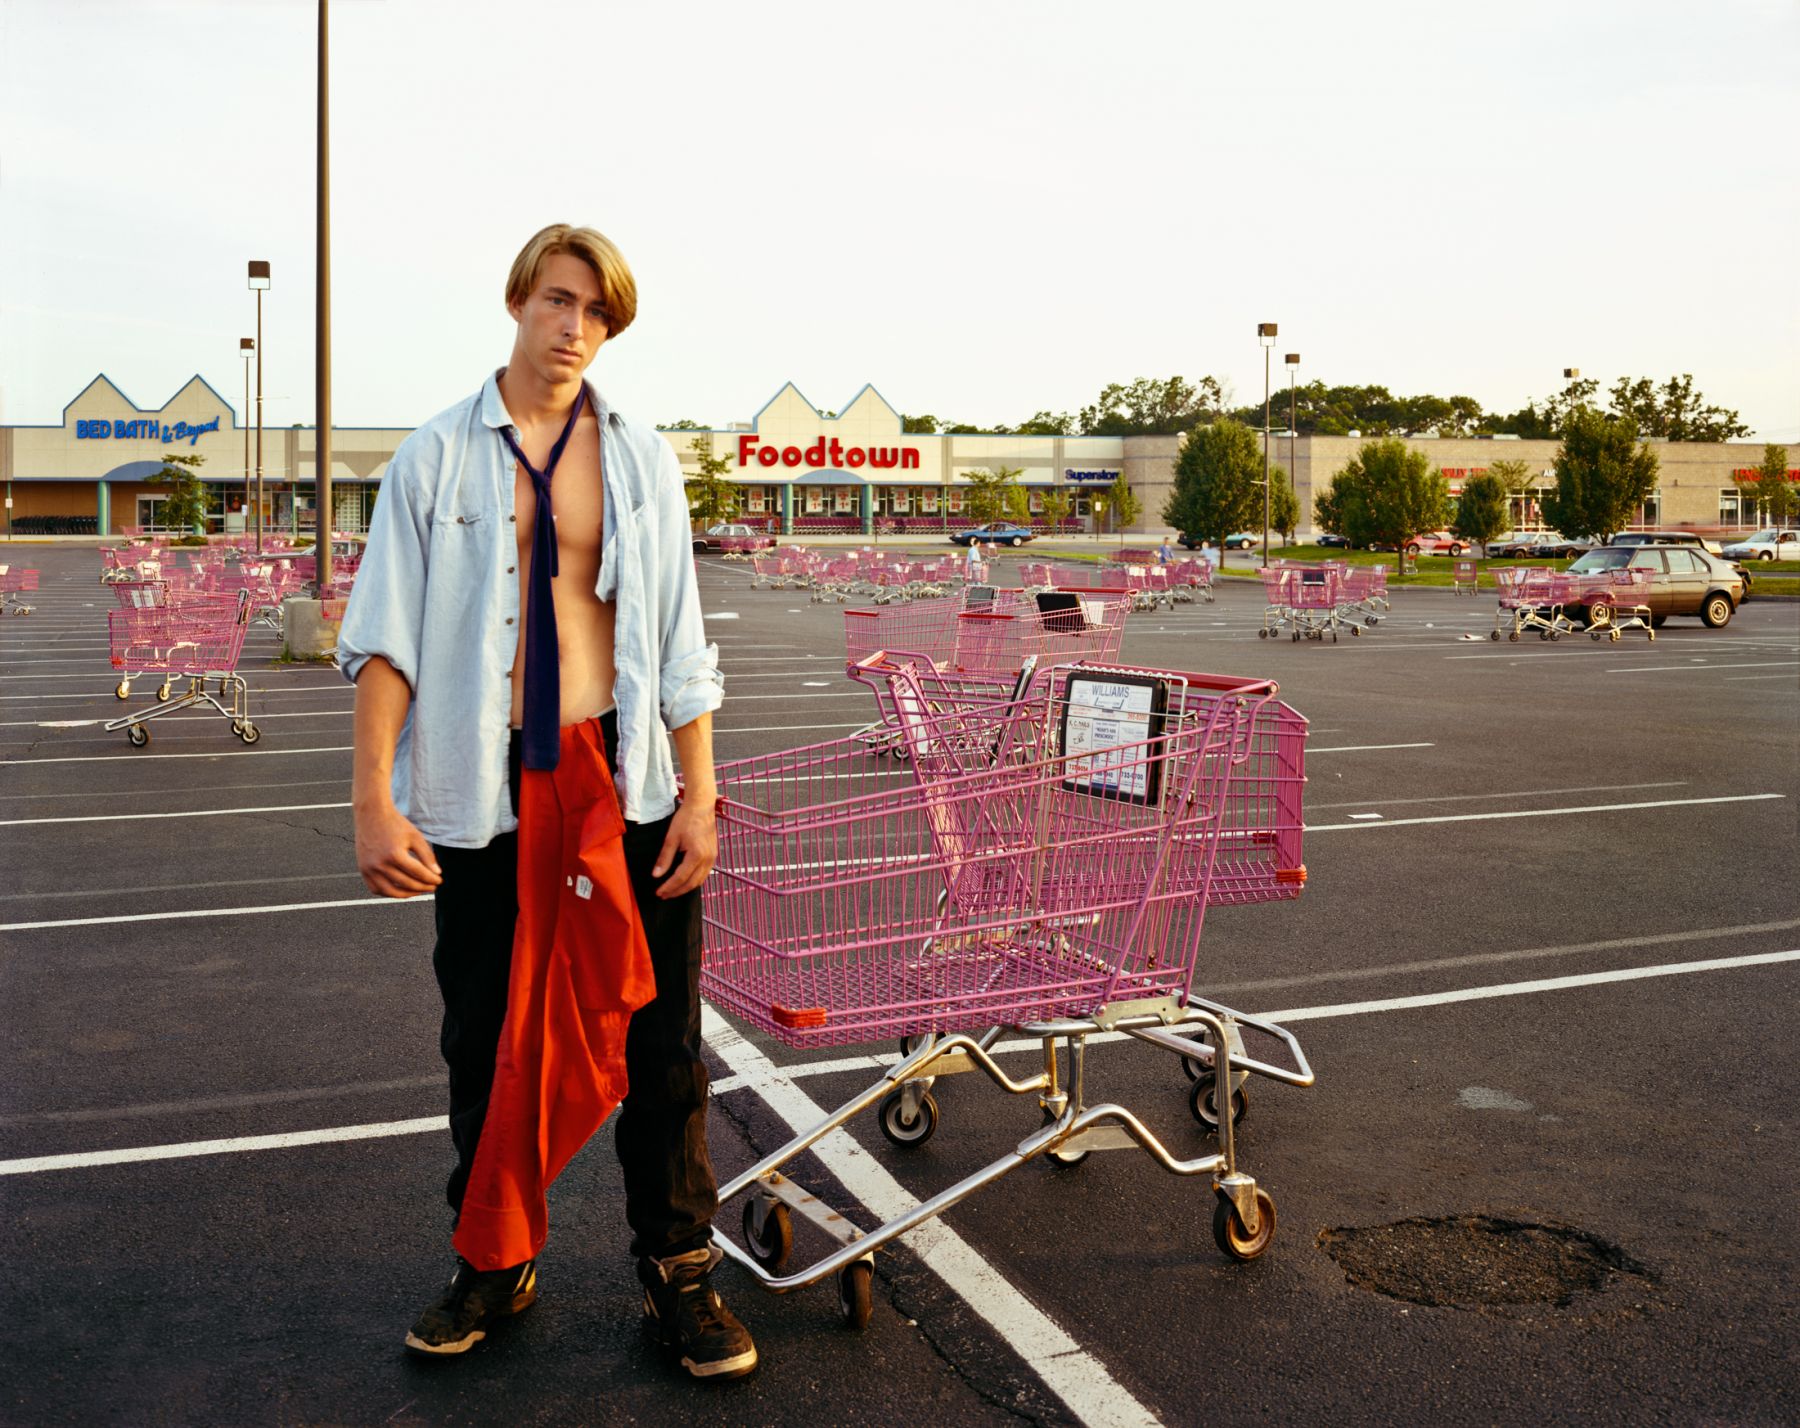 A Young Man Gathering Shopping Carts, Huntington, NY, July 1992